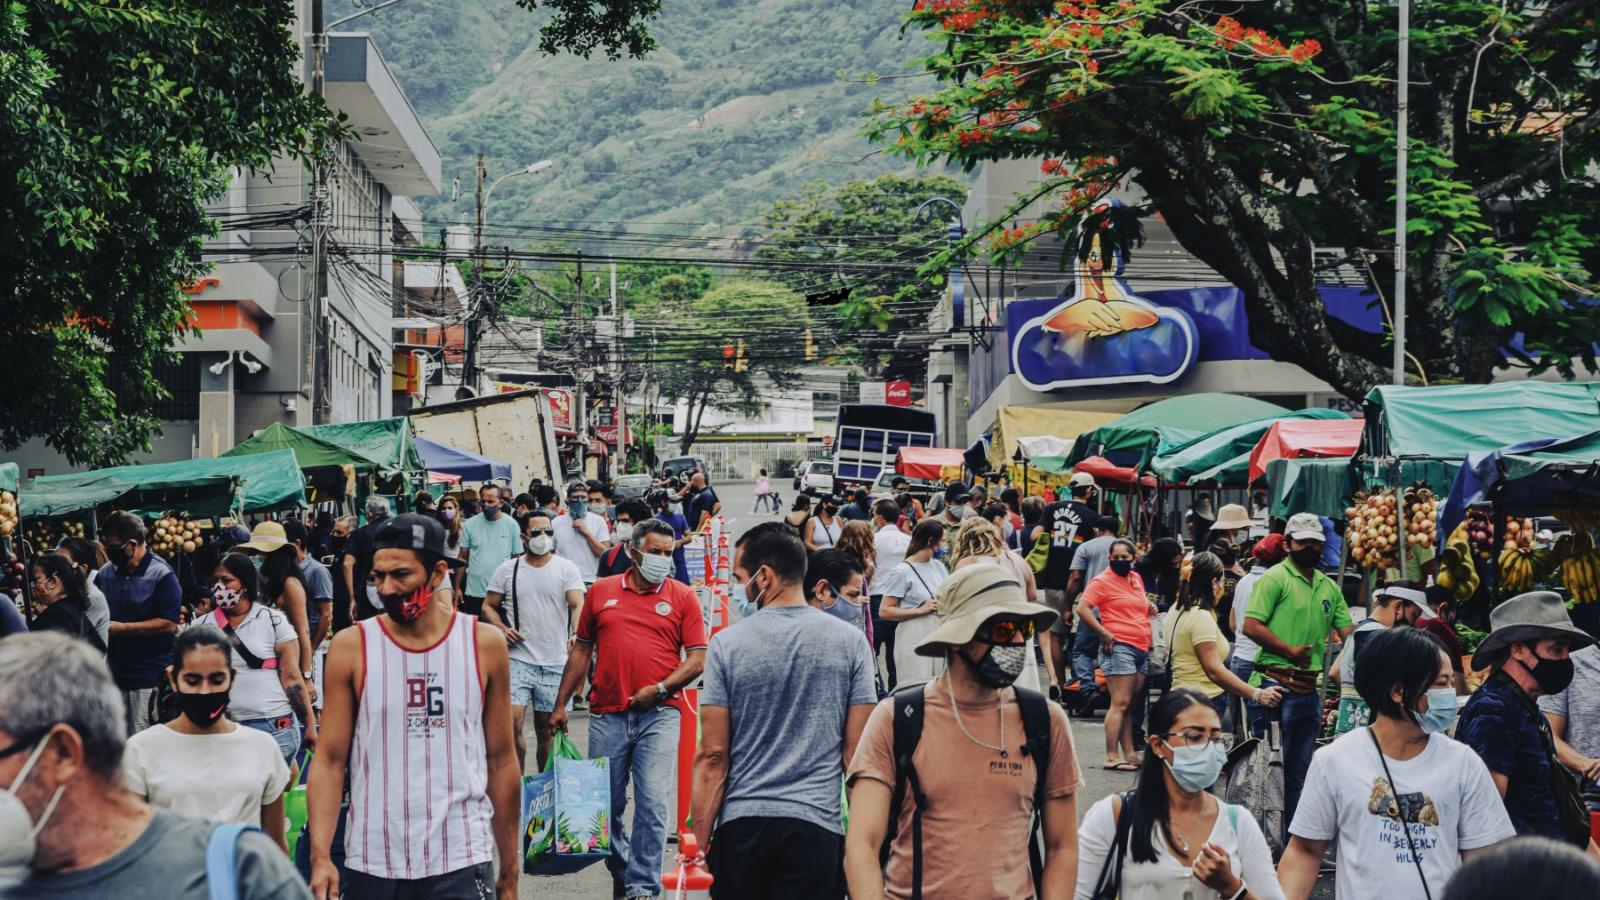 Costa Rica - Gente caminando por una calle arbolada